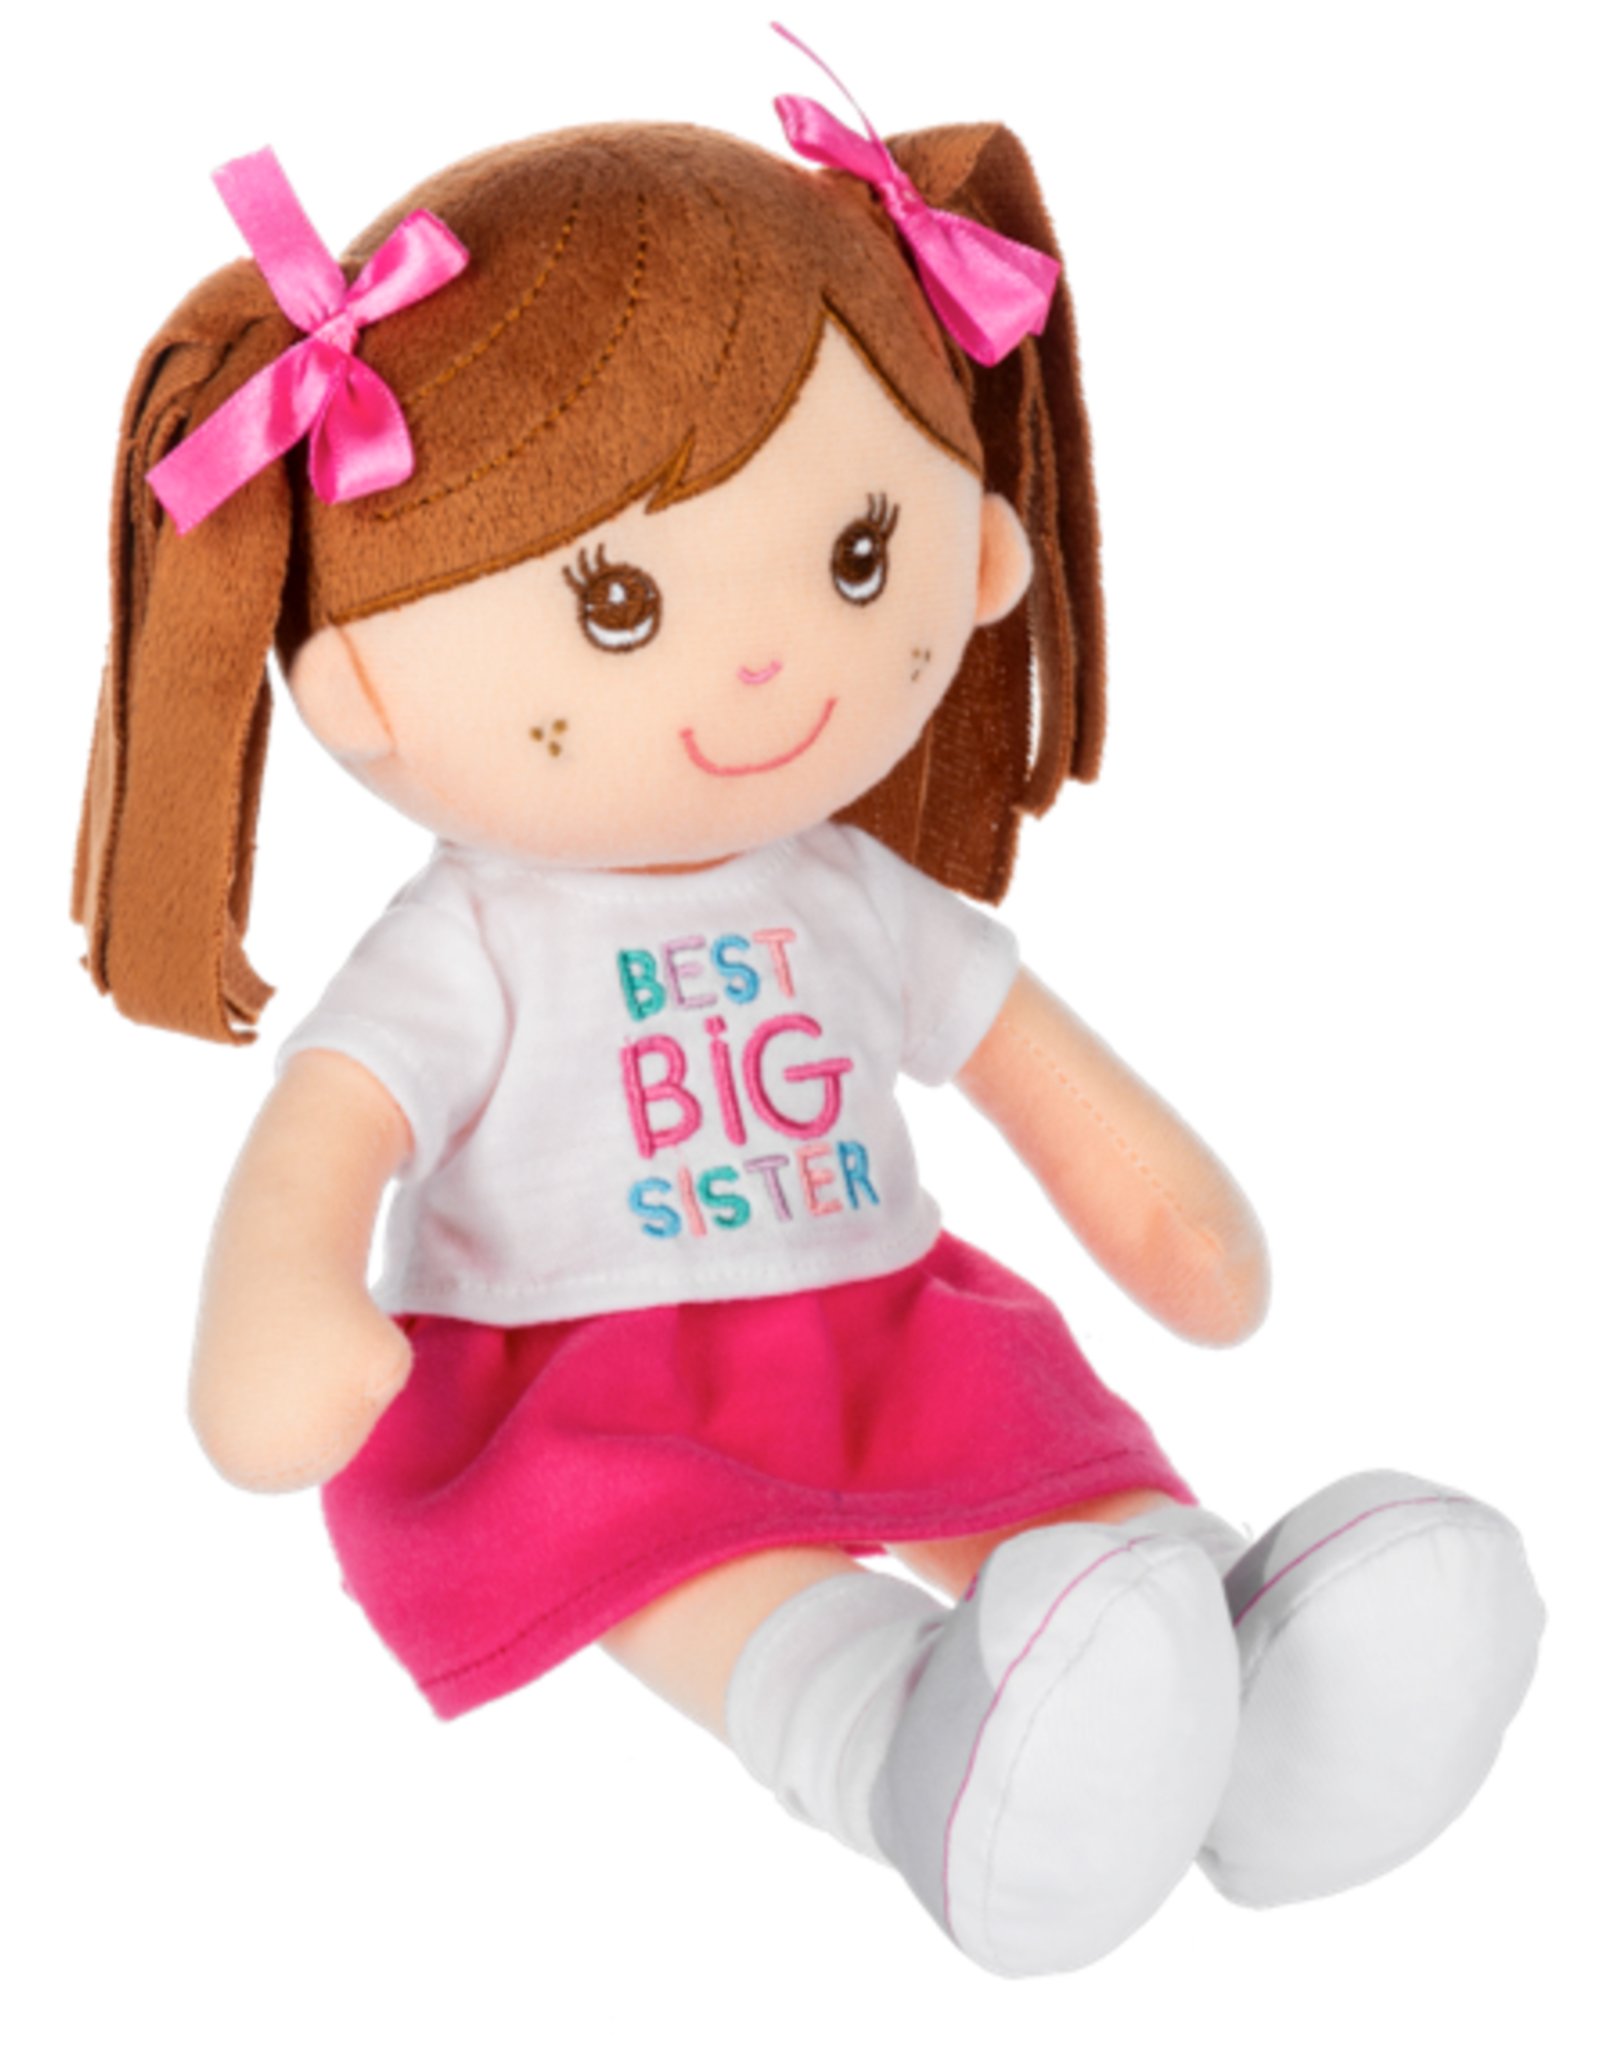 Ganz BG4662 11" Big Sister Doll